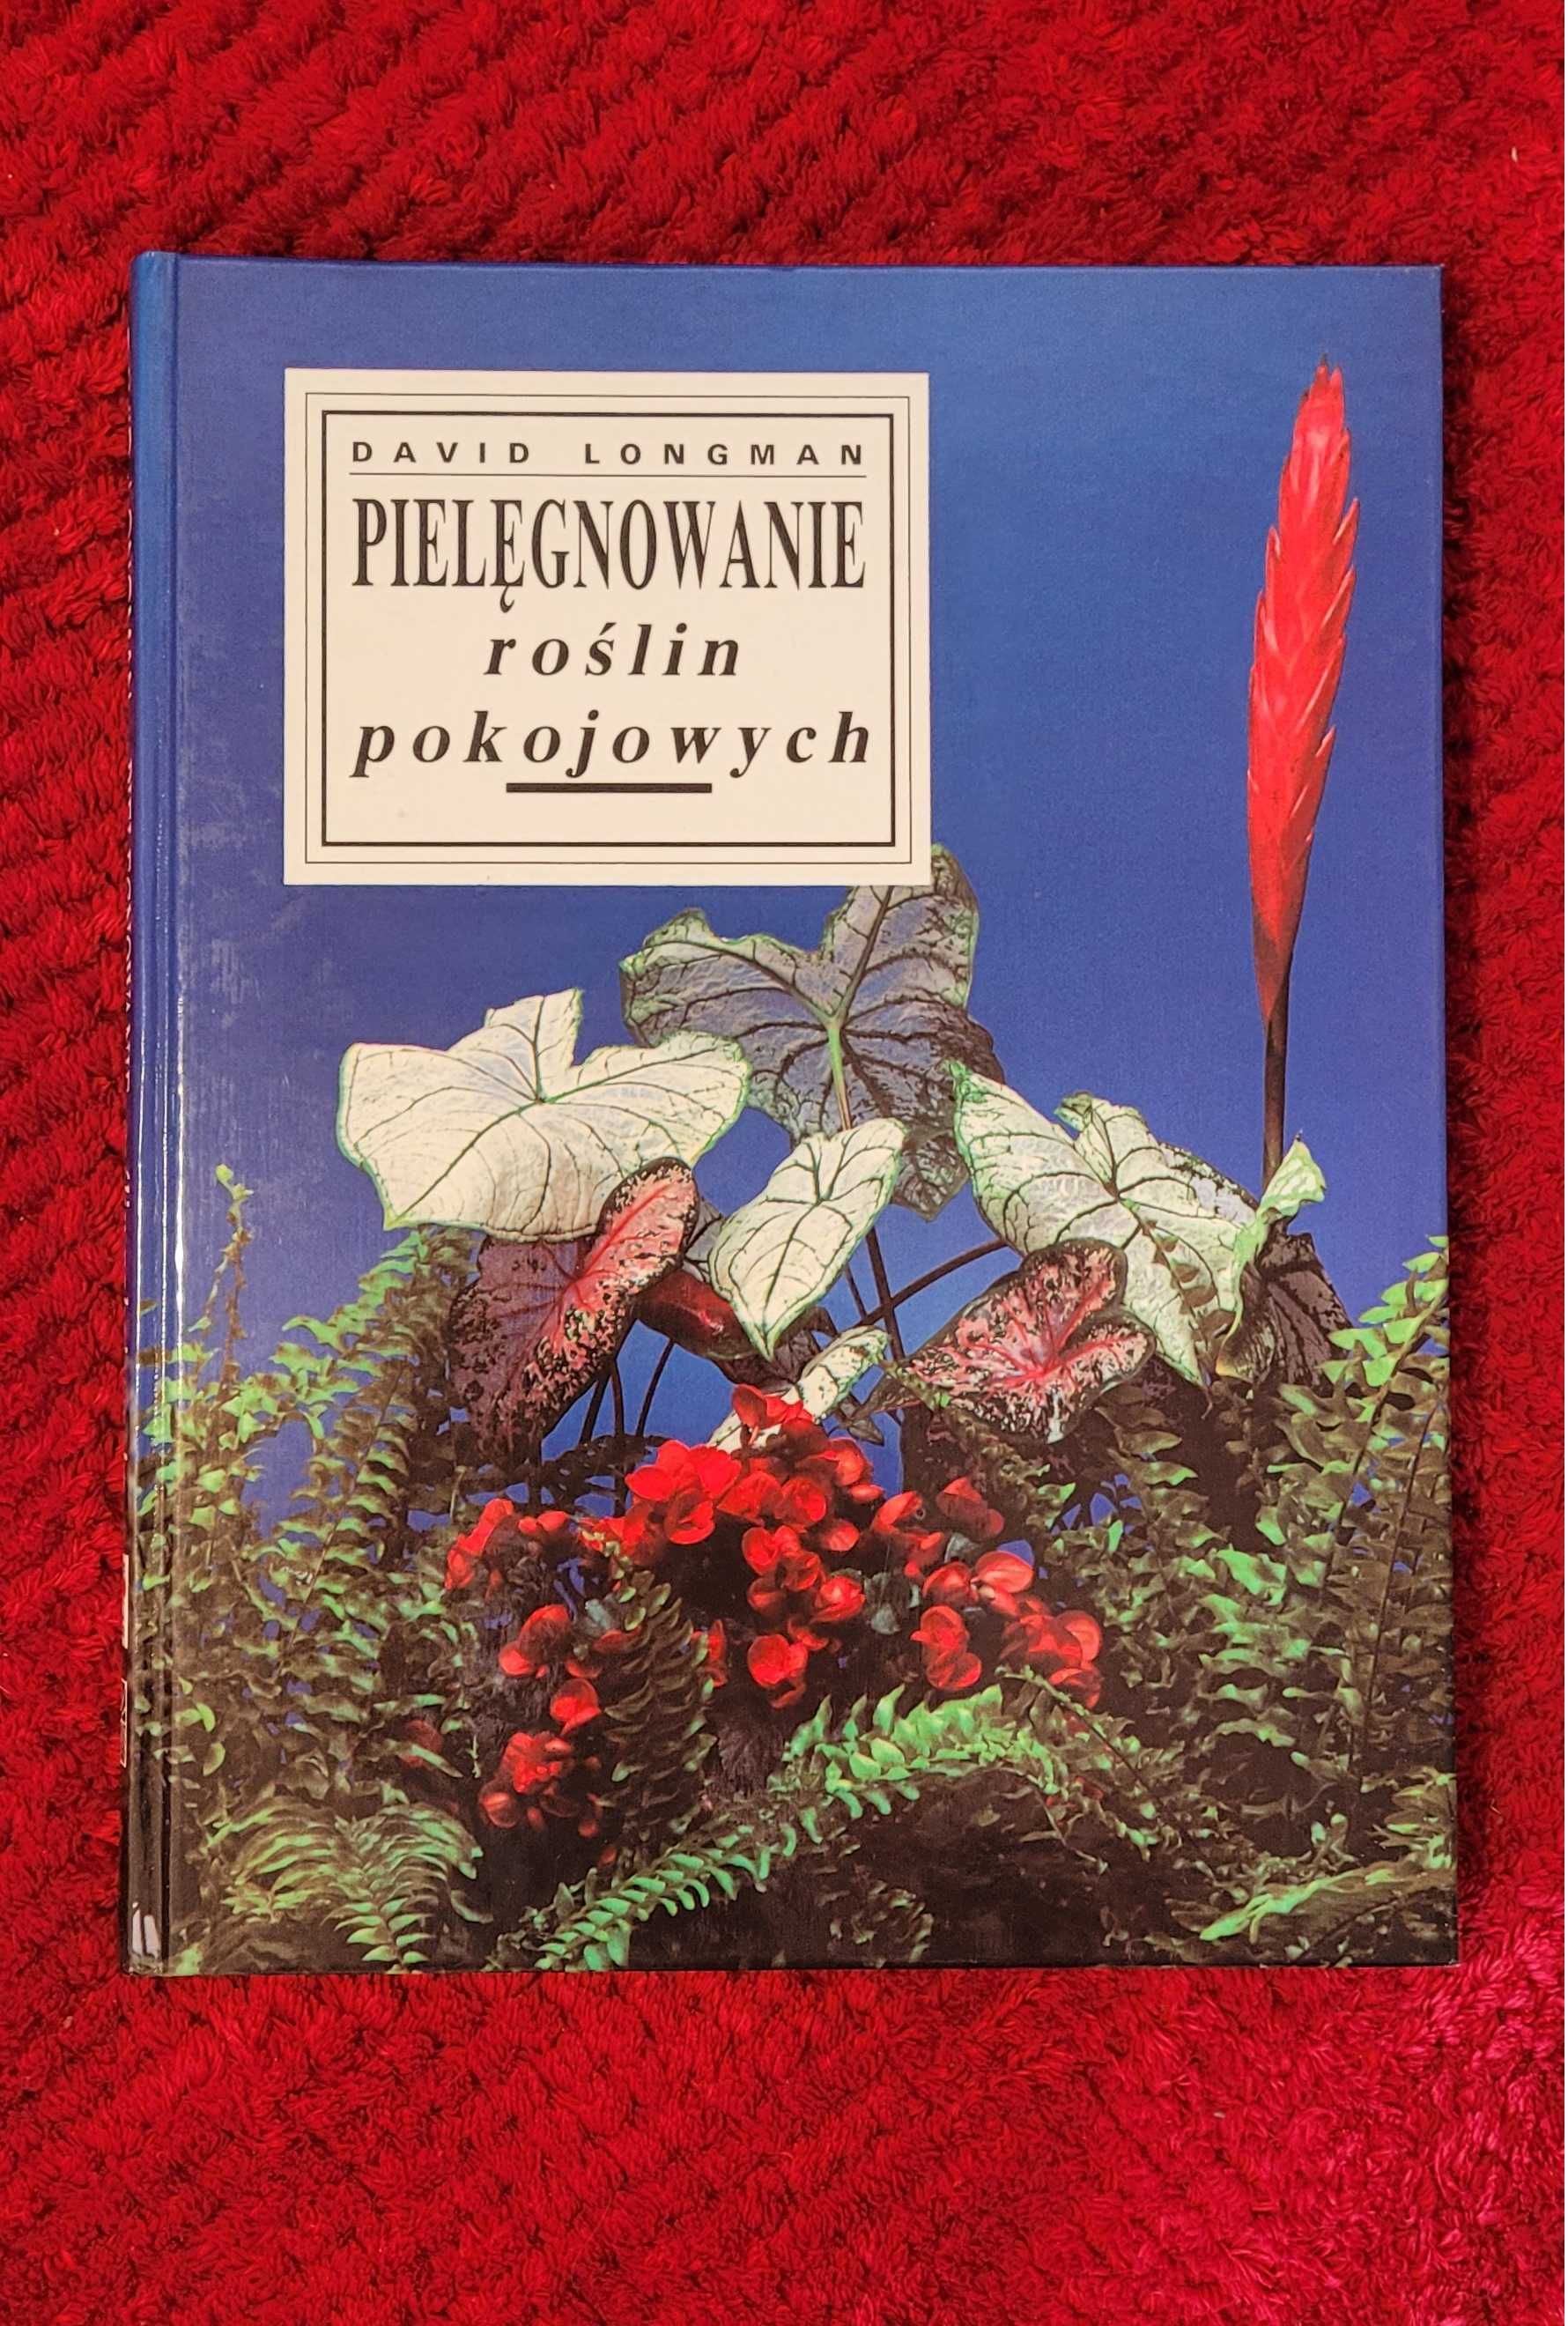 Album "Pielęgnowanie roślin pokojowych" D. Longman